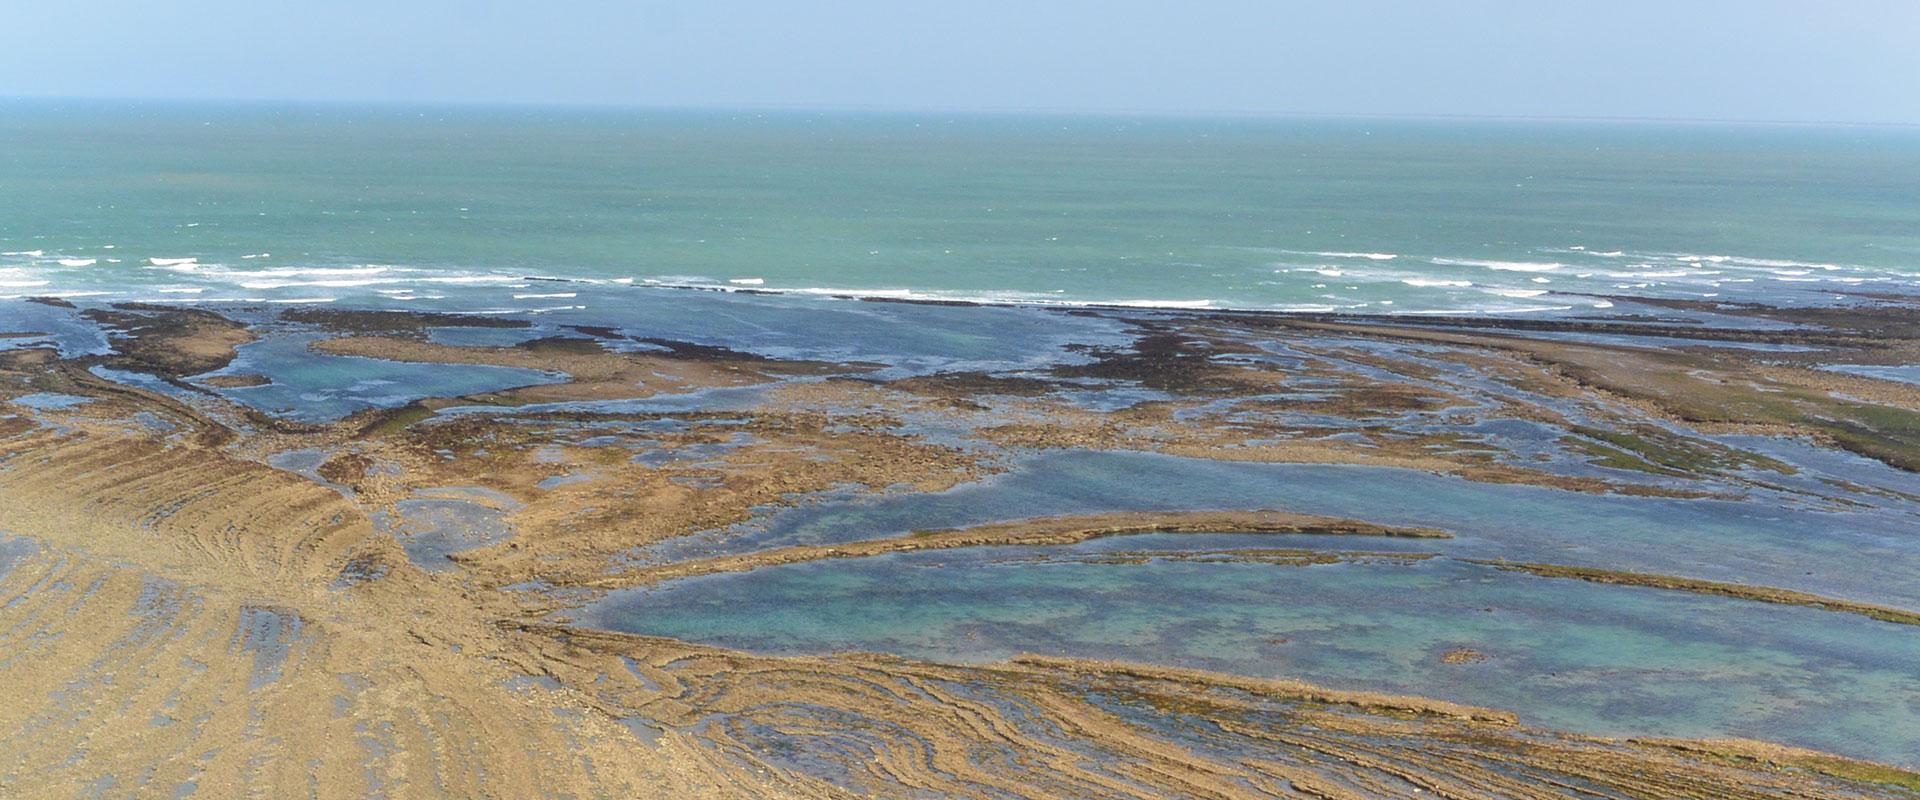 Formations géologiques recoupées par des failles qui se prolongent en mer. Vue de l’estran du phare de Chassiron (presqu'île d’Oléron).